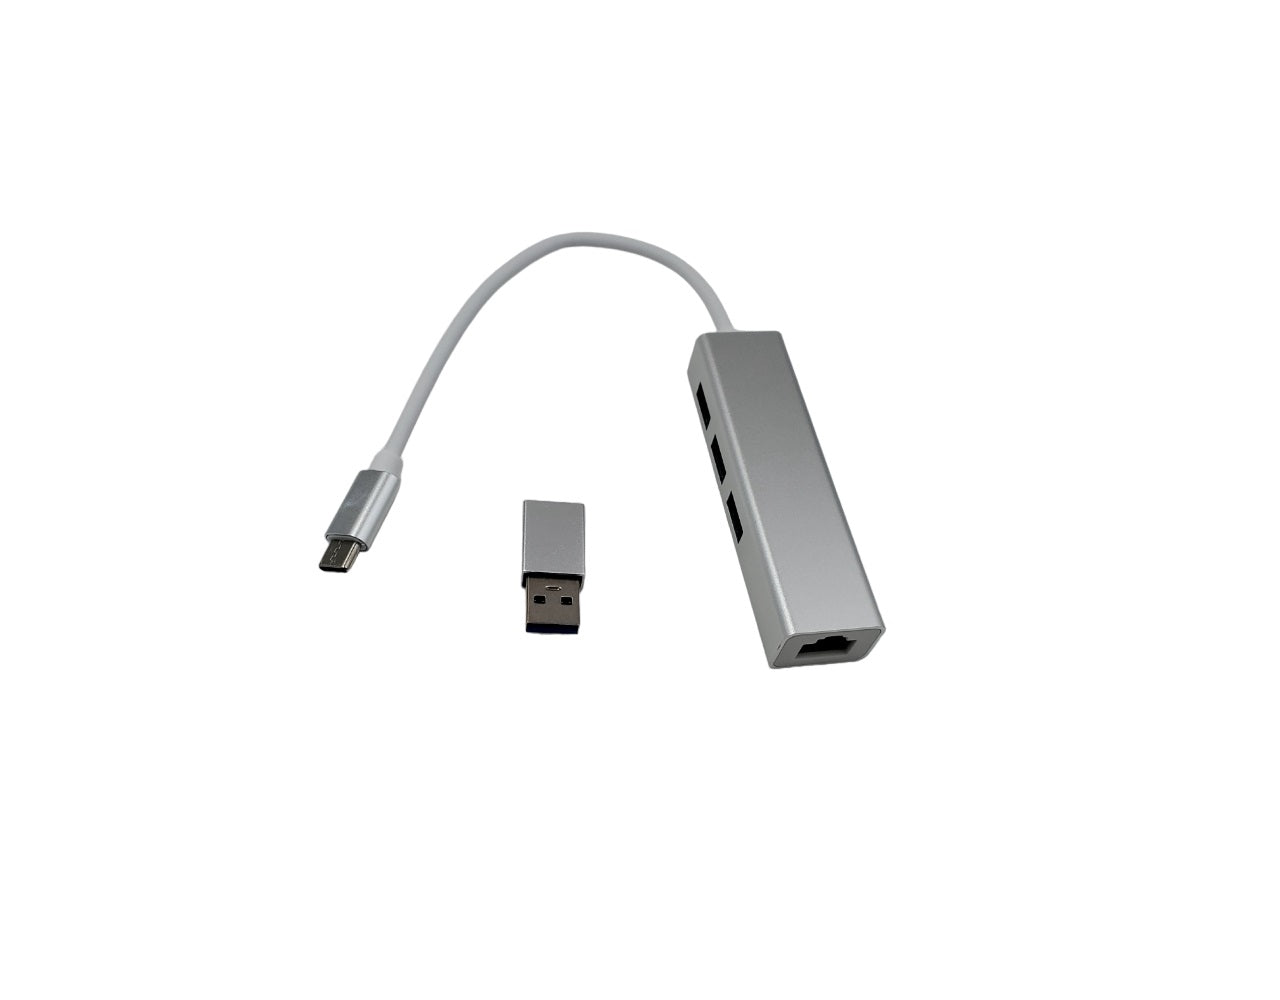 4-in-1 USB-C Hub, USB-C to 3 x USB-A and 1x RJ45 Ethernet LAN